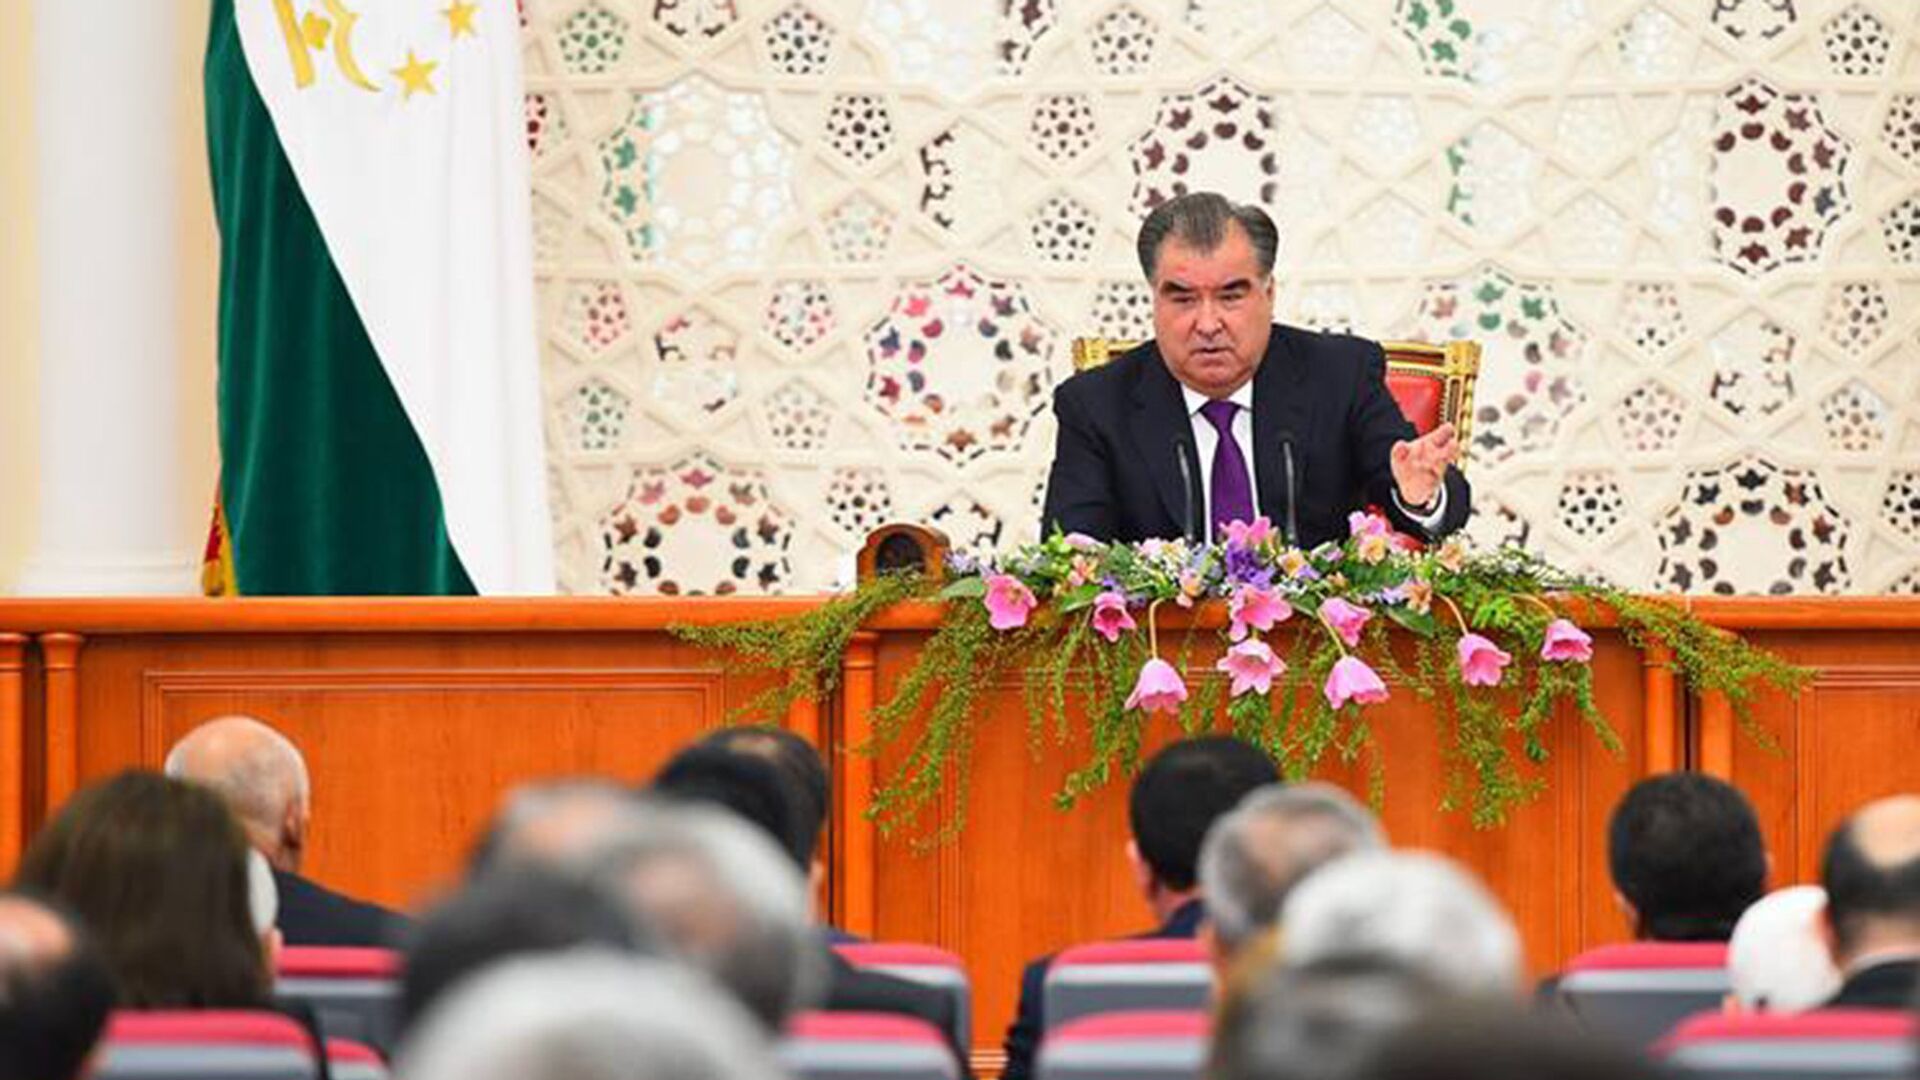 Заседание правительства Таджикистана 8 апреля 2016 года - Sputnik Тоҷикистон, 1920, 21.12.2022